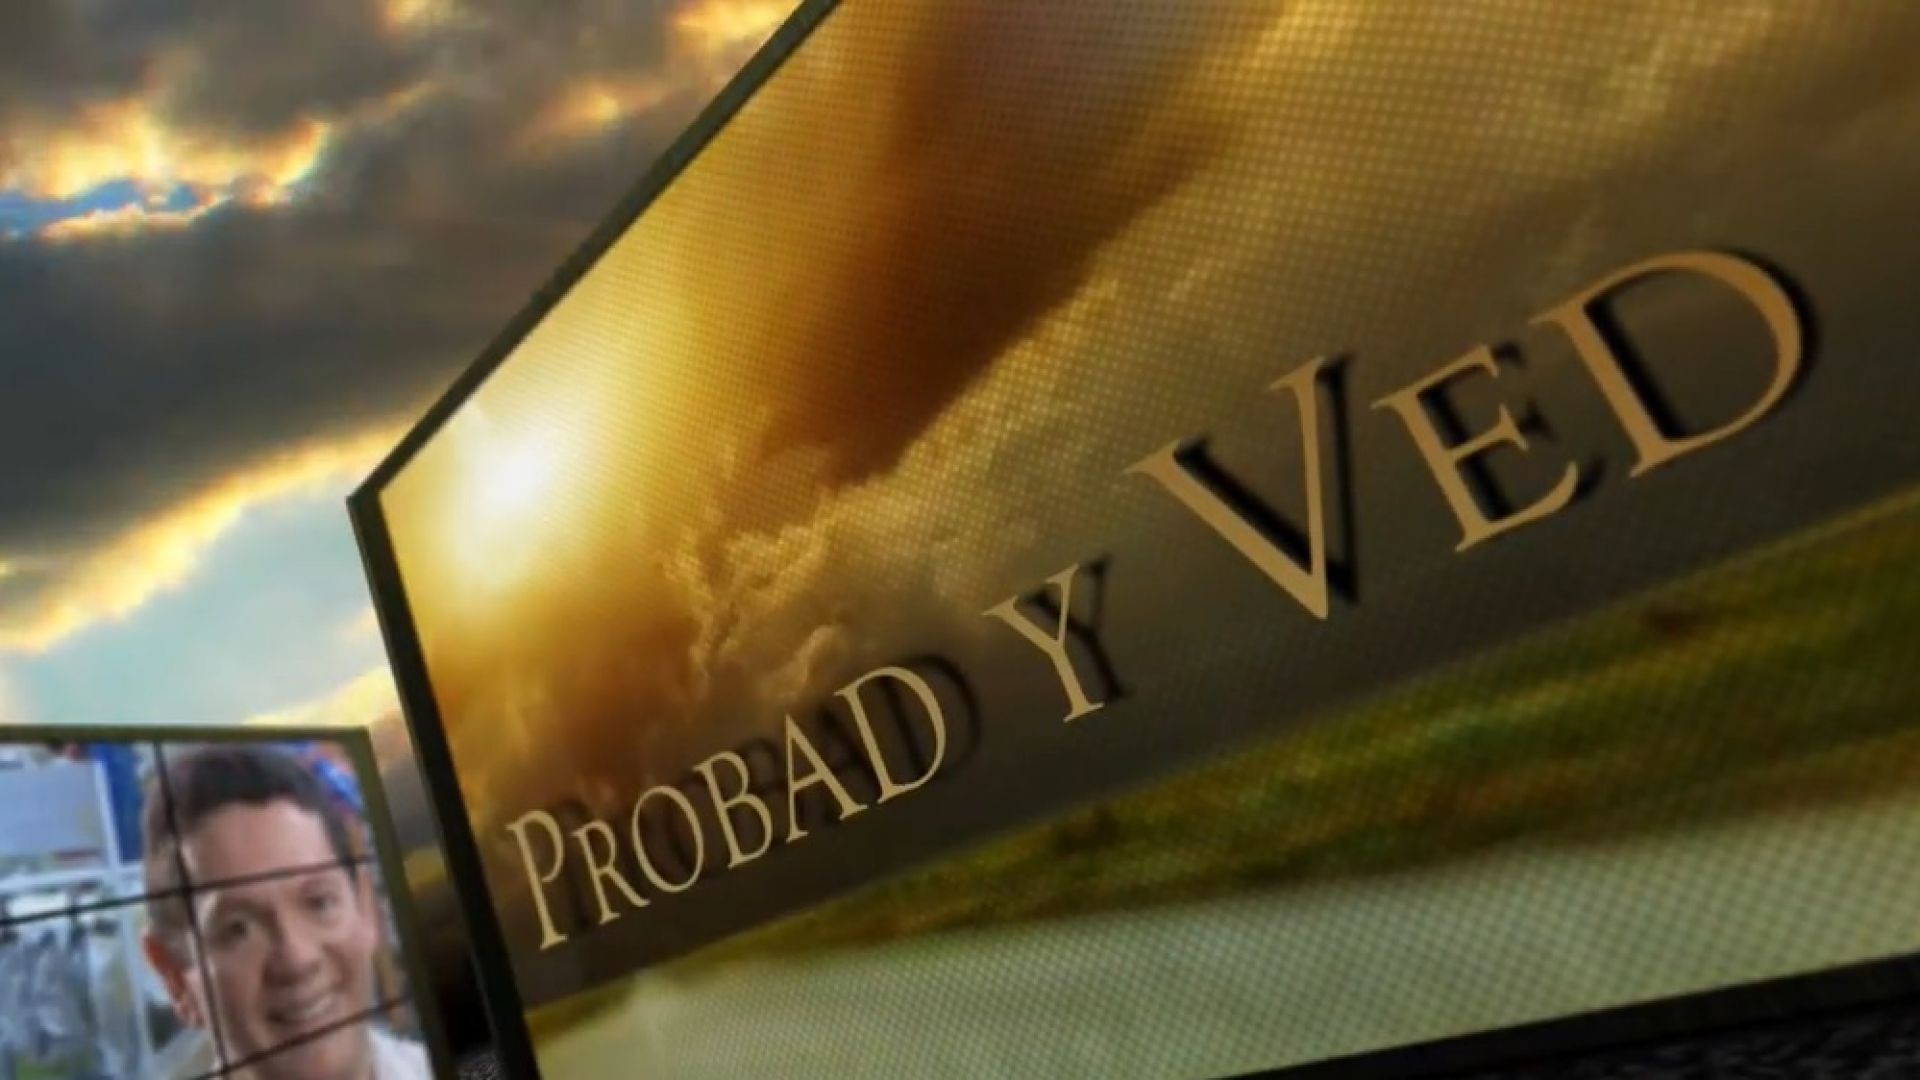 Probad y Ved 2013 - Un plan de salvacion - 13/Abr